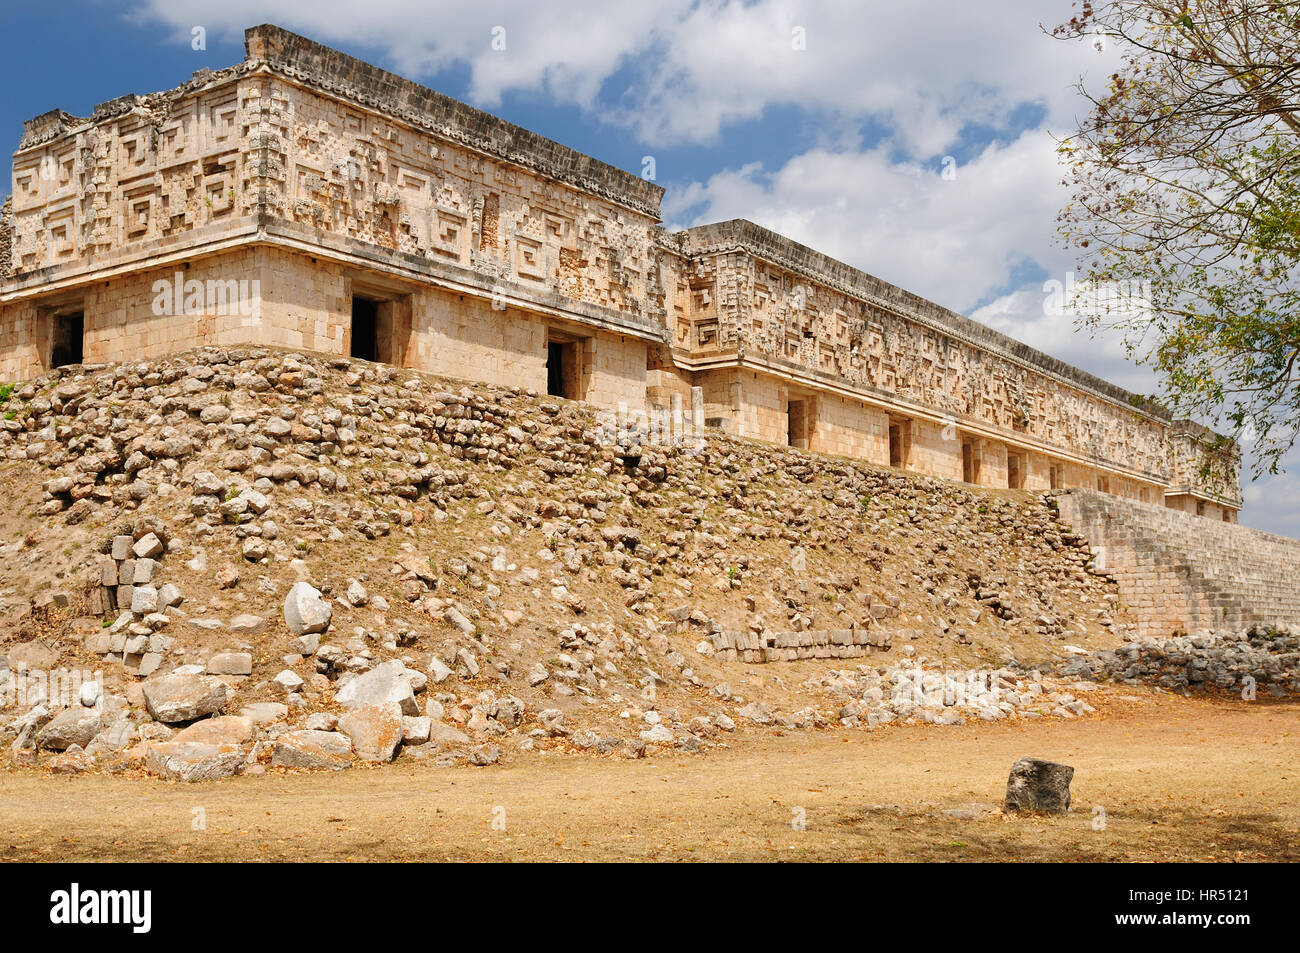 Mexiko, Uxmal Maya-Ruinen ist die archäologische Stätte von größter Relevanz in der Puuc-Route. Bekannt für die schöne Friese seine Gebäude facad Stockfoto